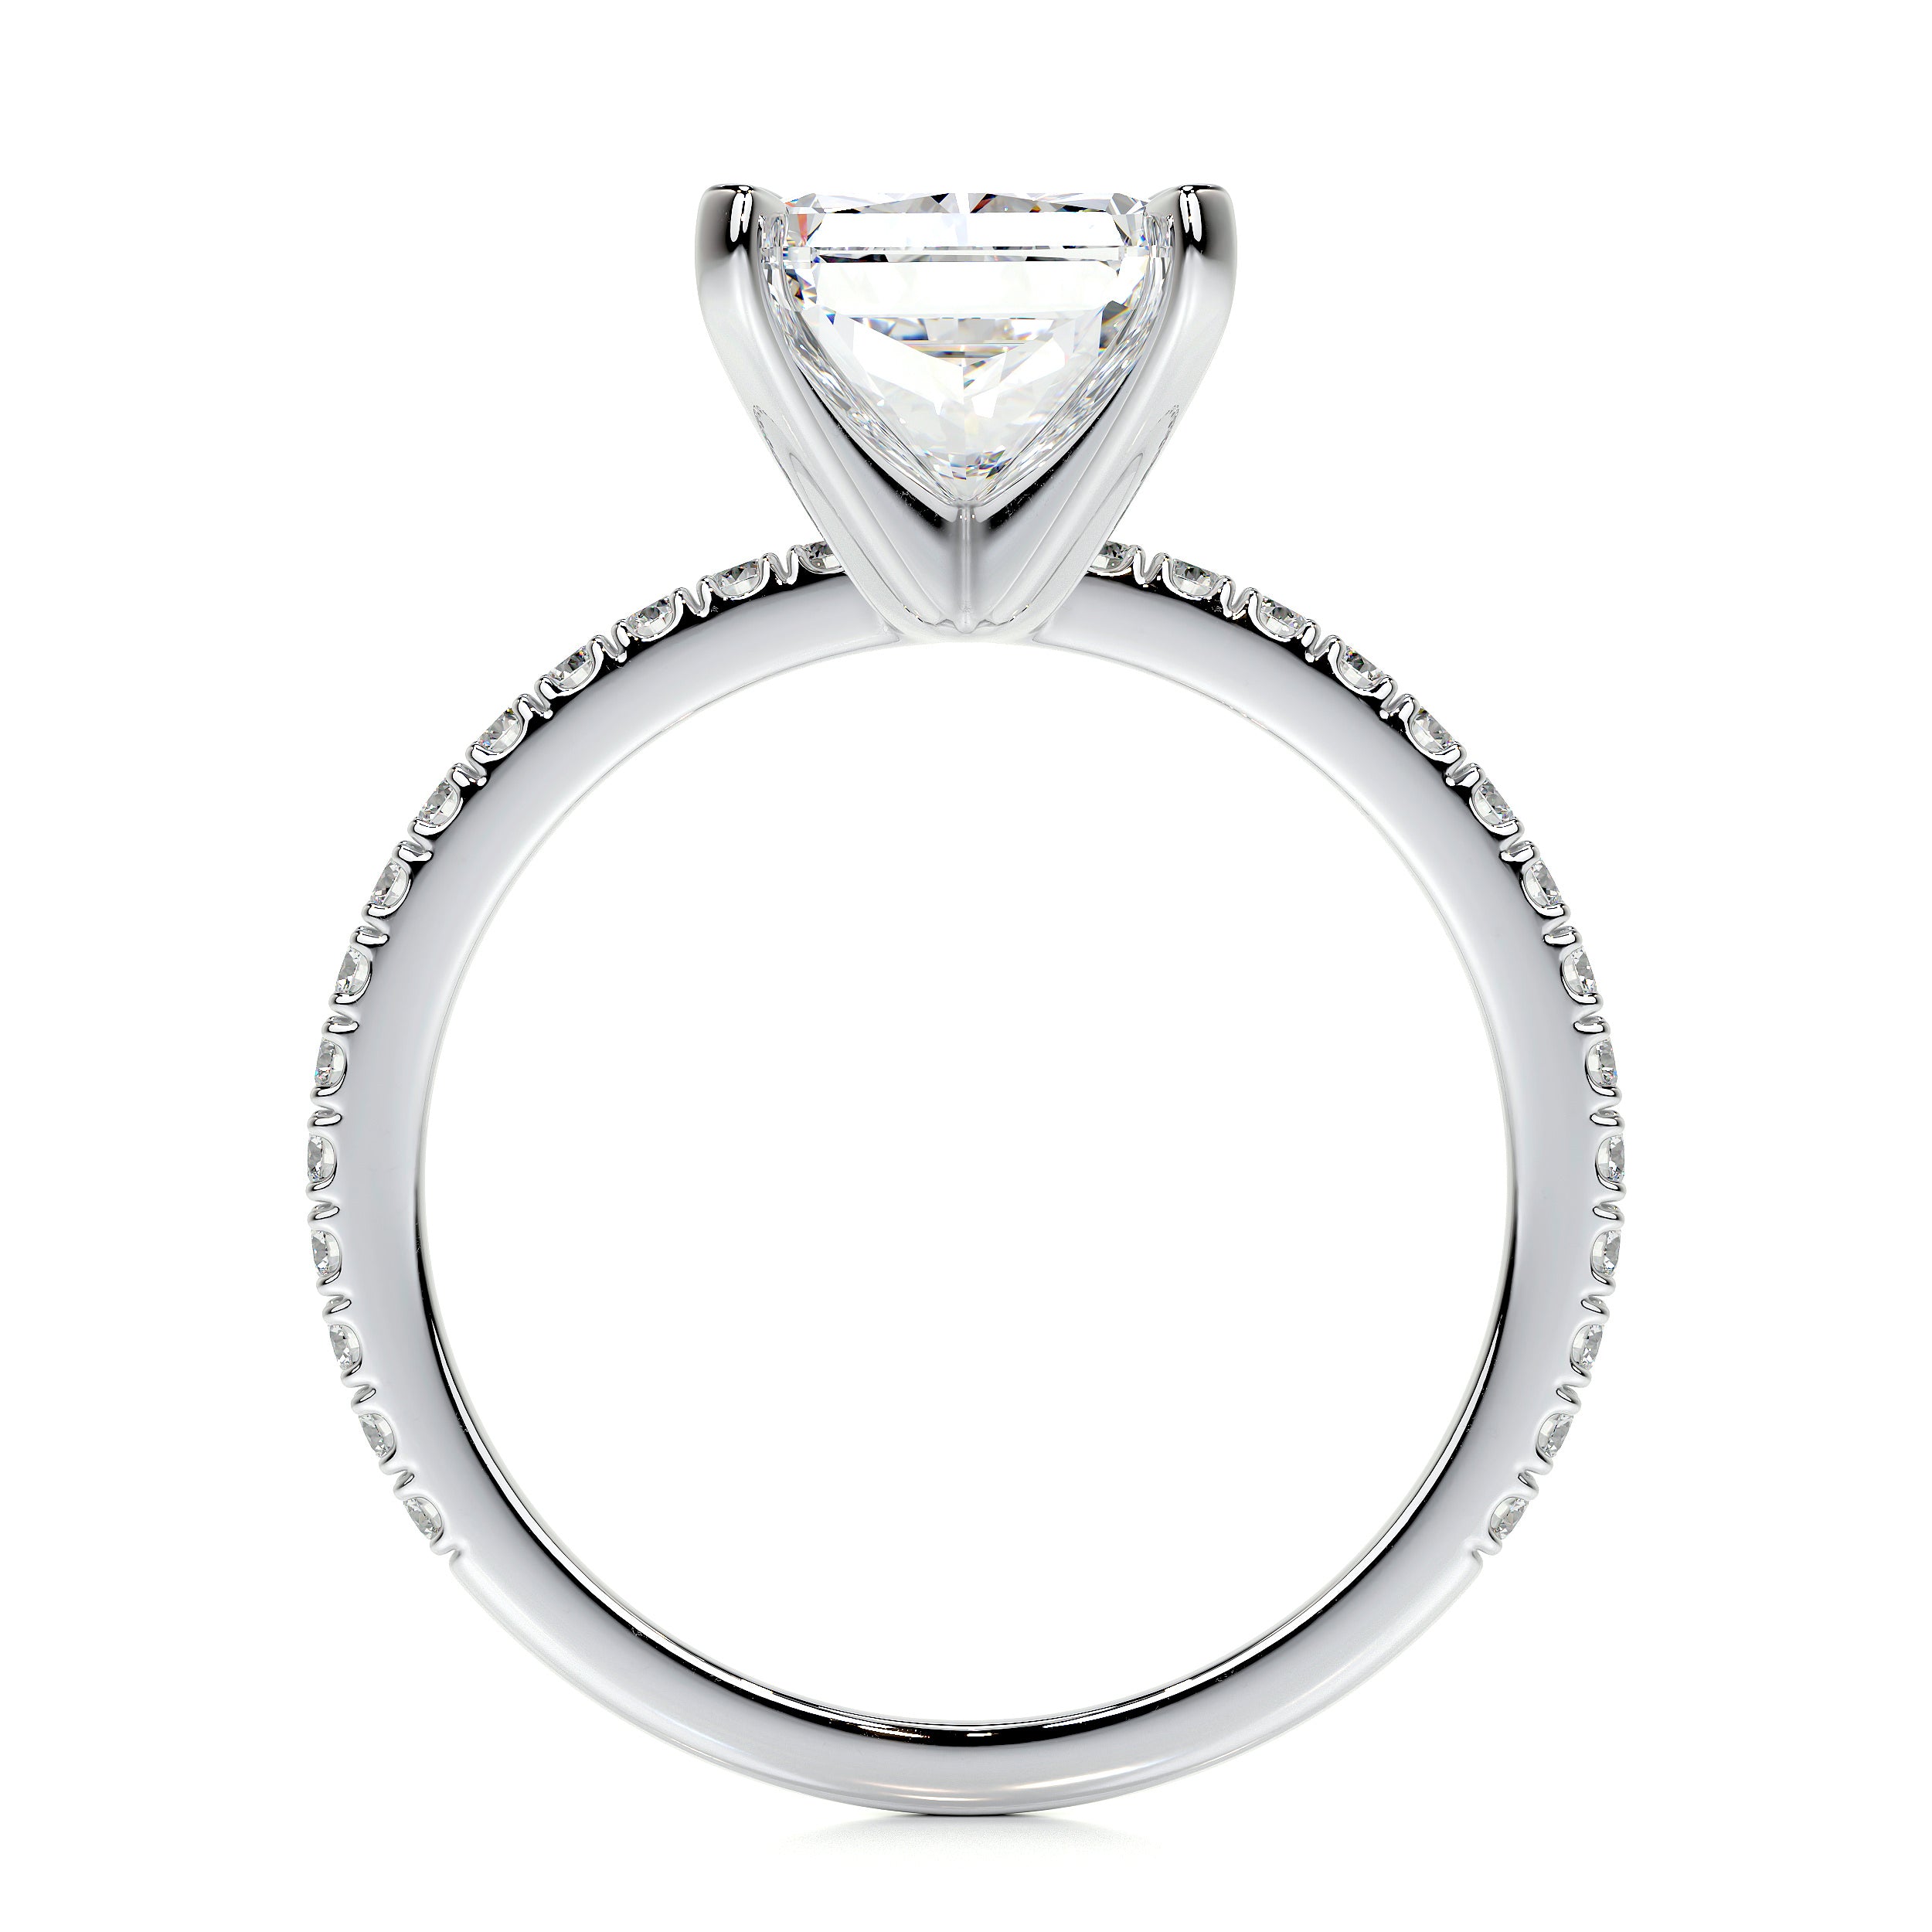 Audrey Lab Grown Diamond Ring -18K White Gold